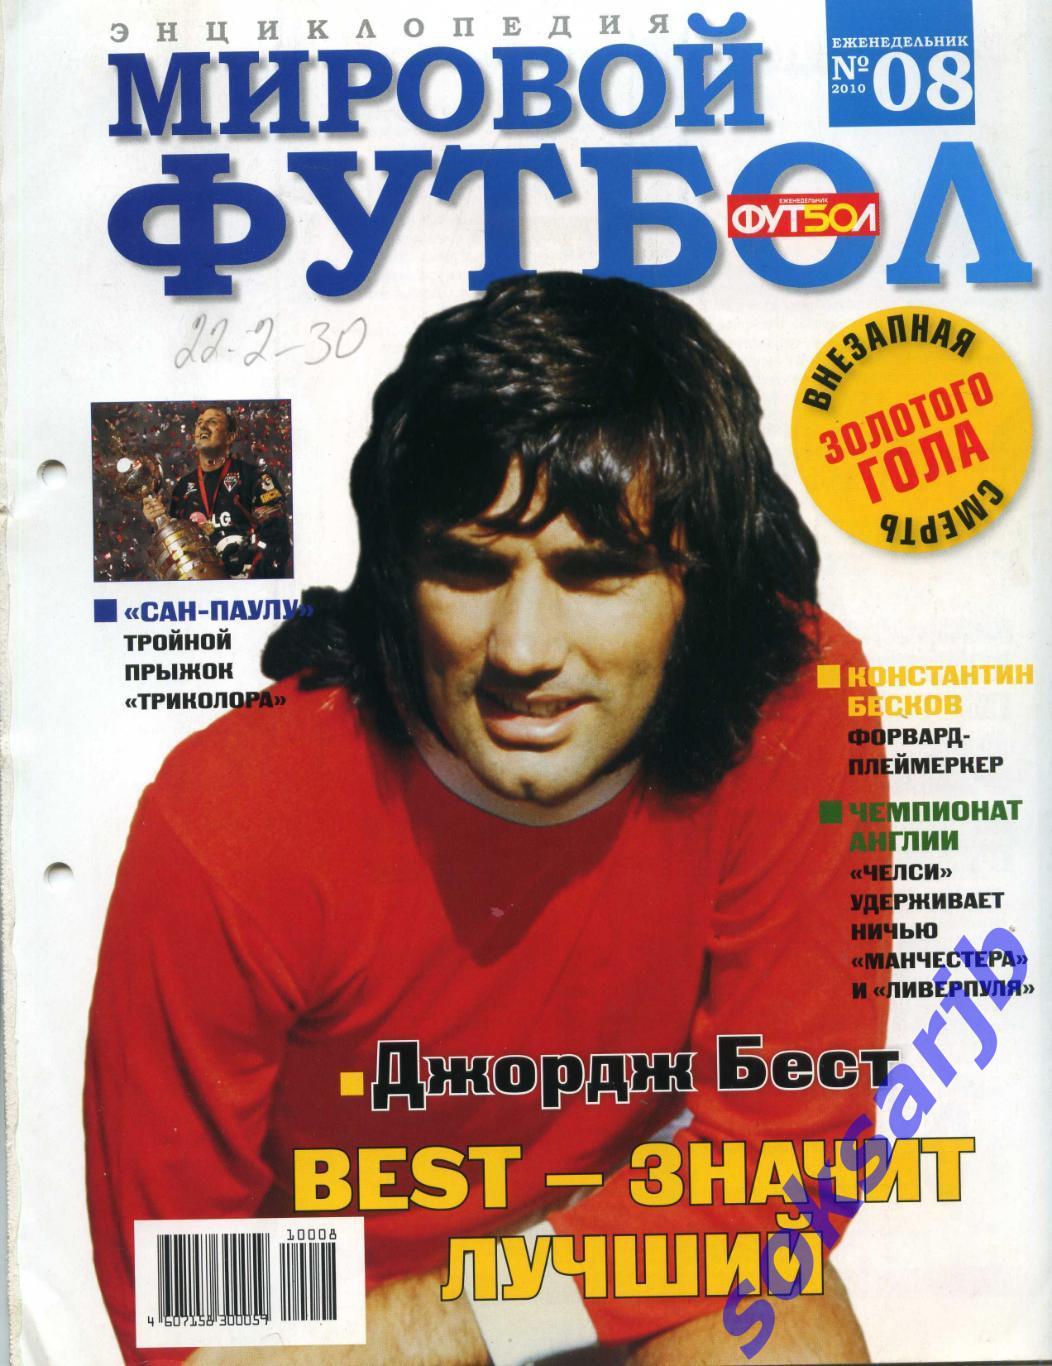 2010. Мировой футбол. Энциклопедия. № 8.